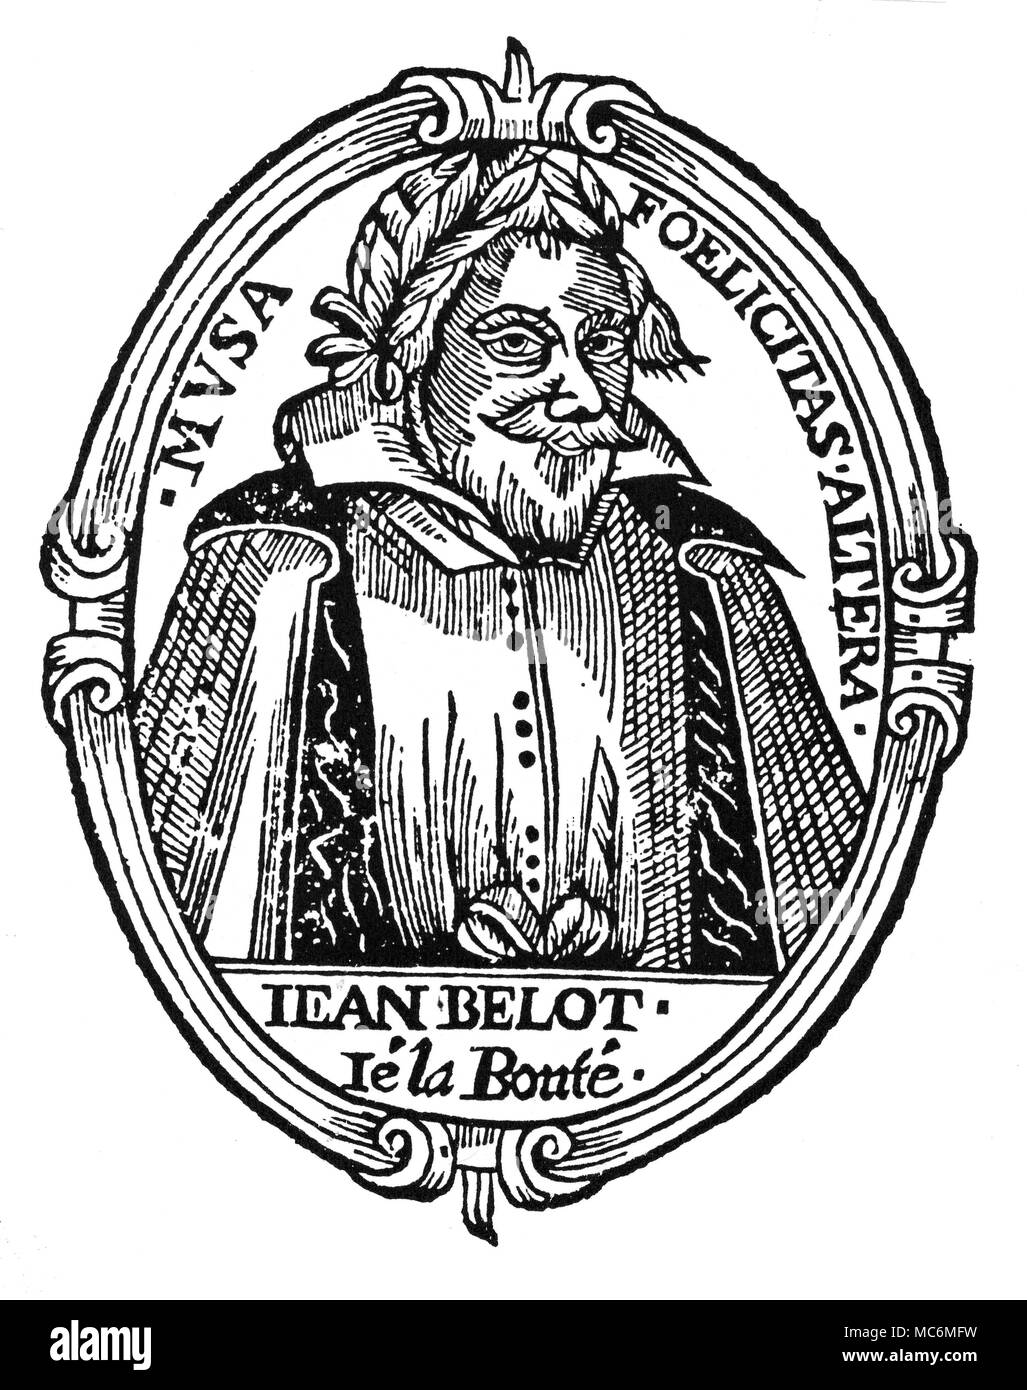 Handlesen - frühe HANDLESEN Porträt der Französischen Handleser, Jean Belot. Aus seinen Werken - einschließlich einer Erhebung der handlesekunst - im Jahre 1647 (die Oeuvres veröffentlicht). Stockfoto